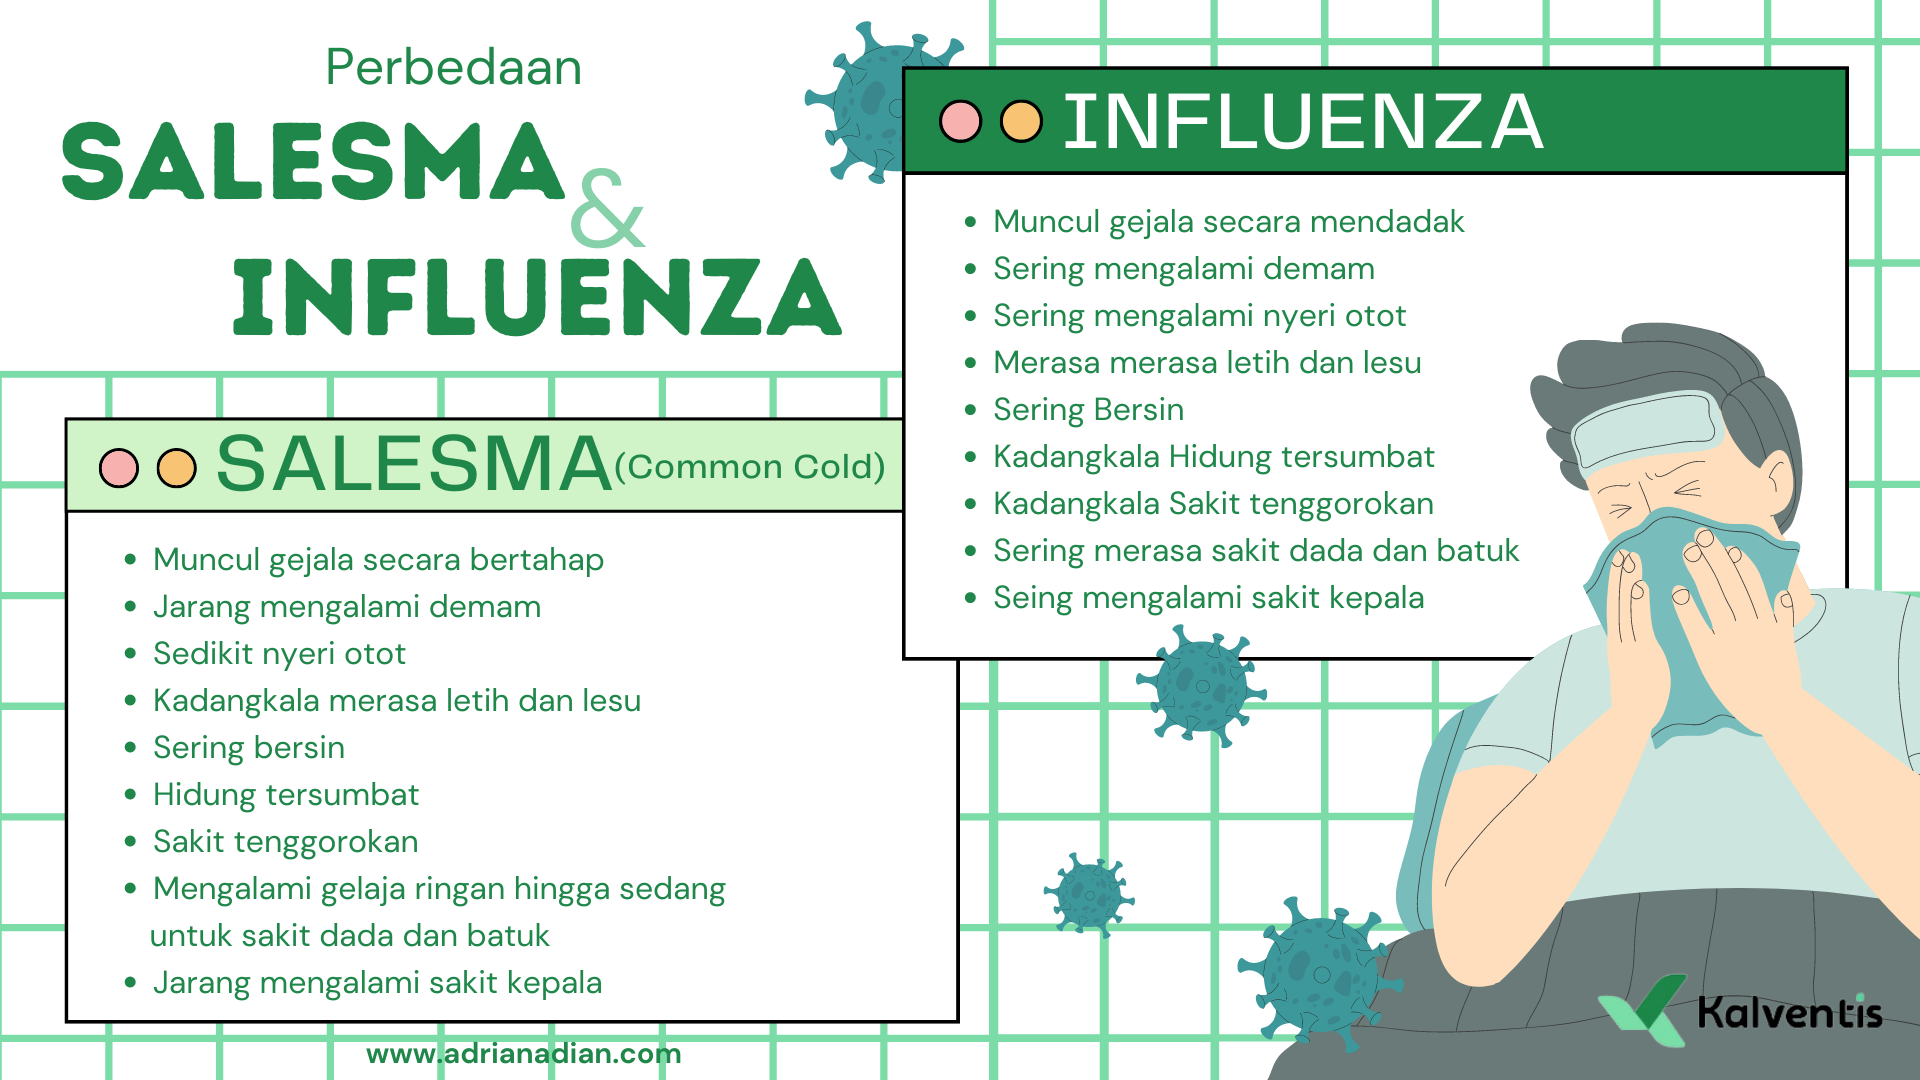 Perbedaan influenza dan salesma